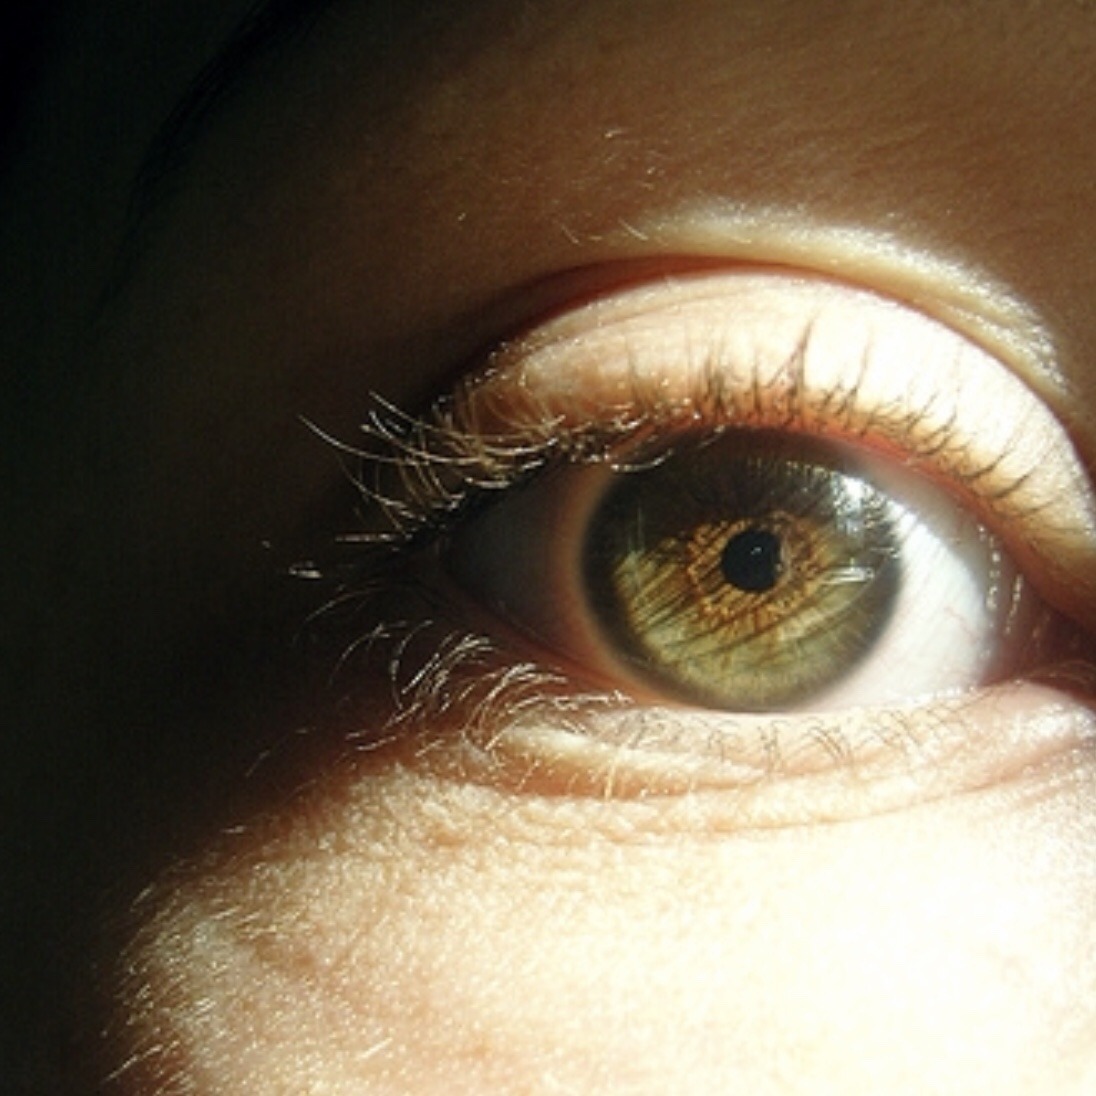 eyelashes on Tumblr